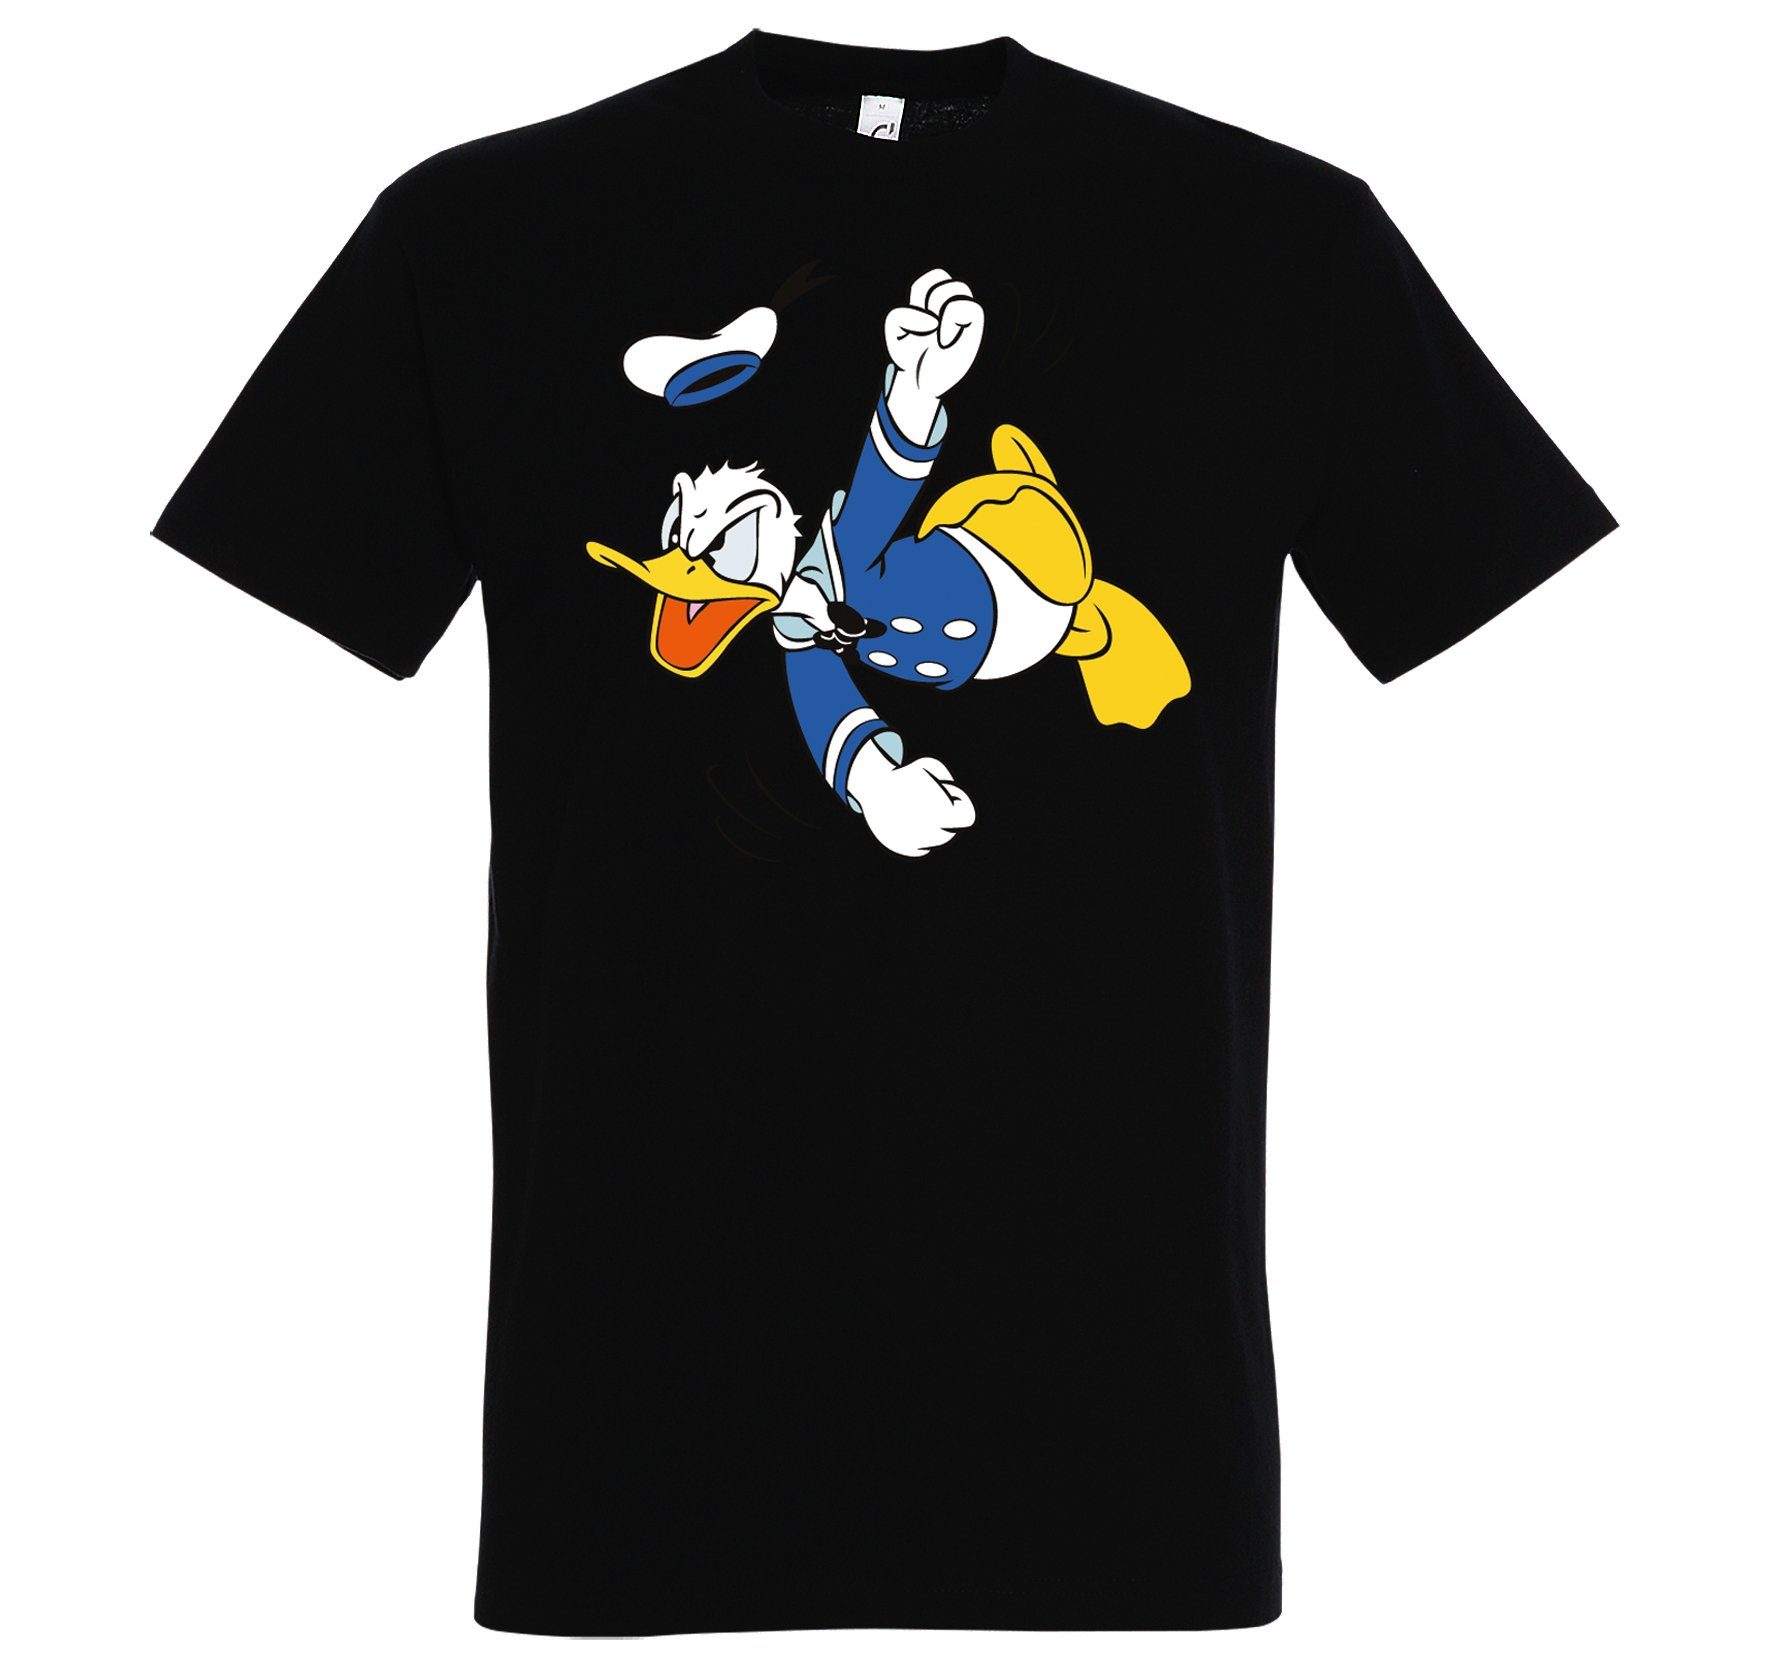 Herren Shirts Youth Designz T-Shirt Donald Herren Shirt mit modischem Frontprint